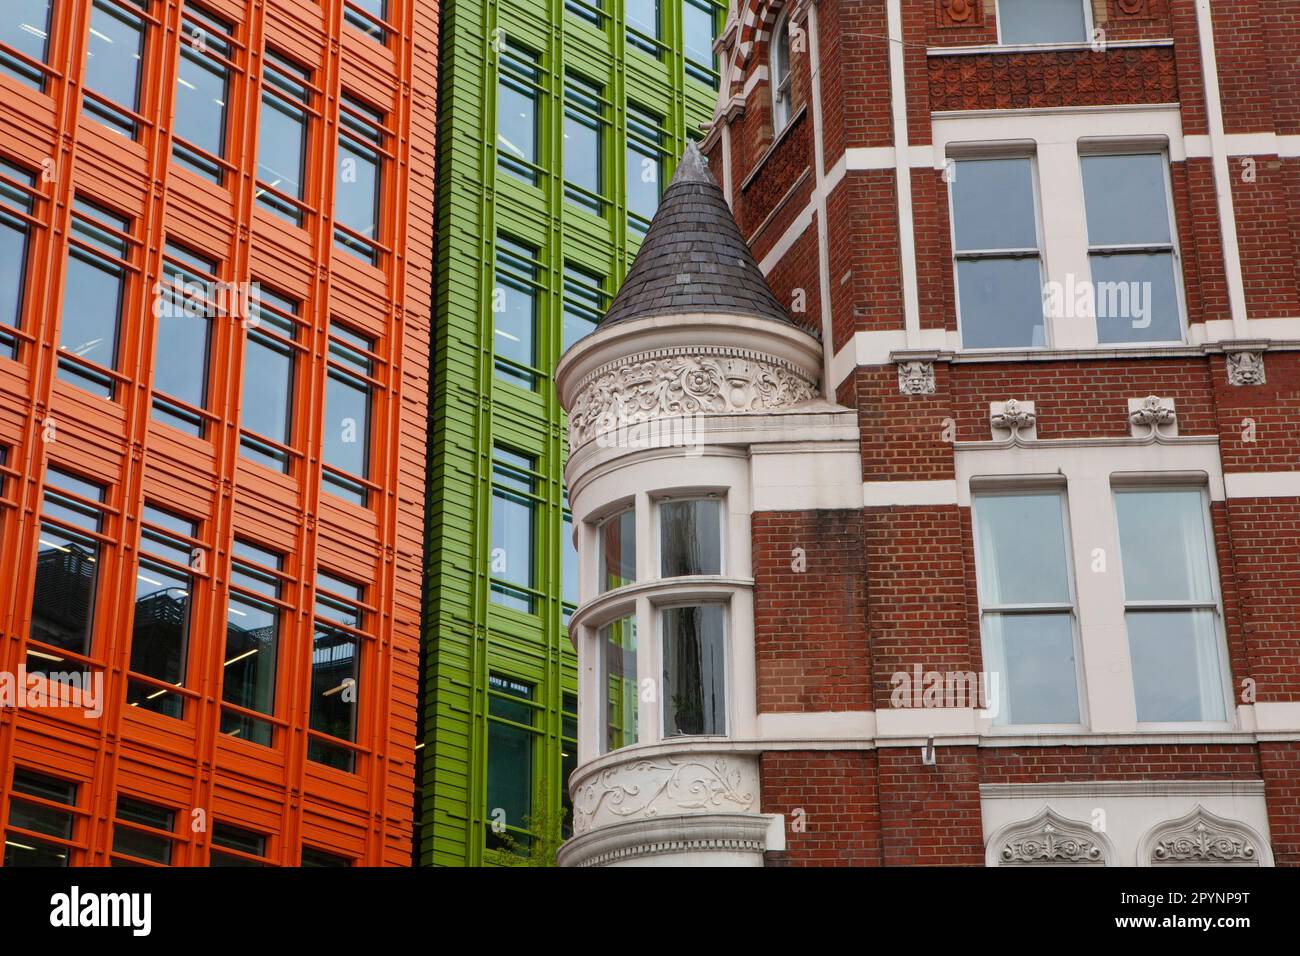 En Shaftesbury Avenue, Londres, los nuevos edificios de oficinas de Central St Giles, incluidas las oficinas de Google, contrastan en estilo con un edificio más antiguo. Foto de stock